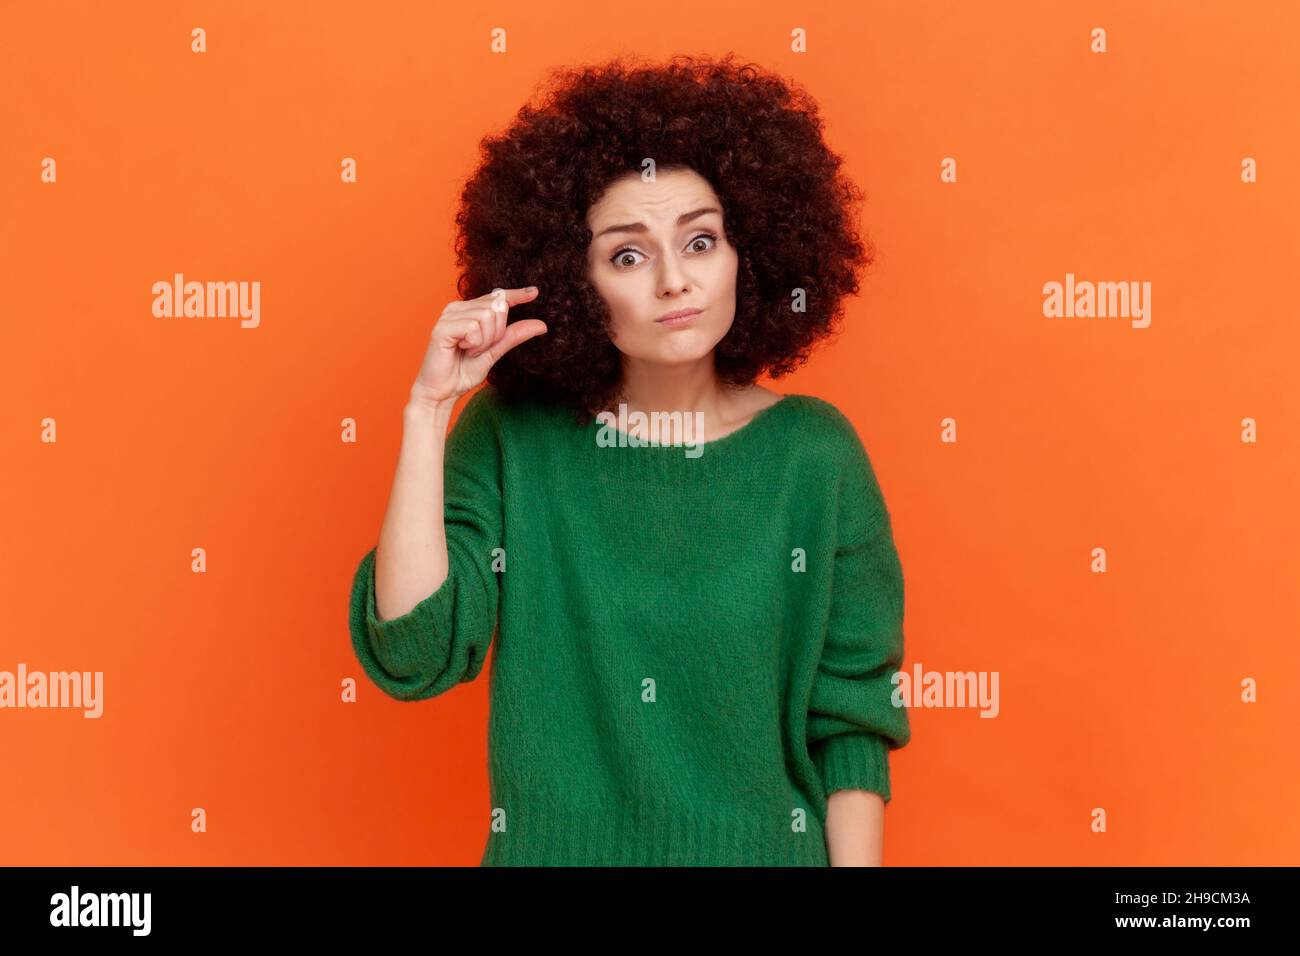 Portrait d'une femme avec une coiffure afro portant un chandail vert de style décontracté montrant un petit geste avec les doigts, regardant l'appareil photo avec déception.Studio d'intérieur isolé sur fond orange Banque D'Images